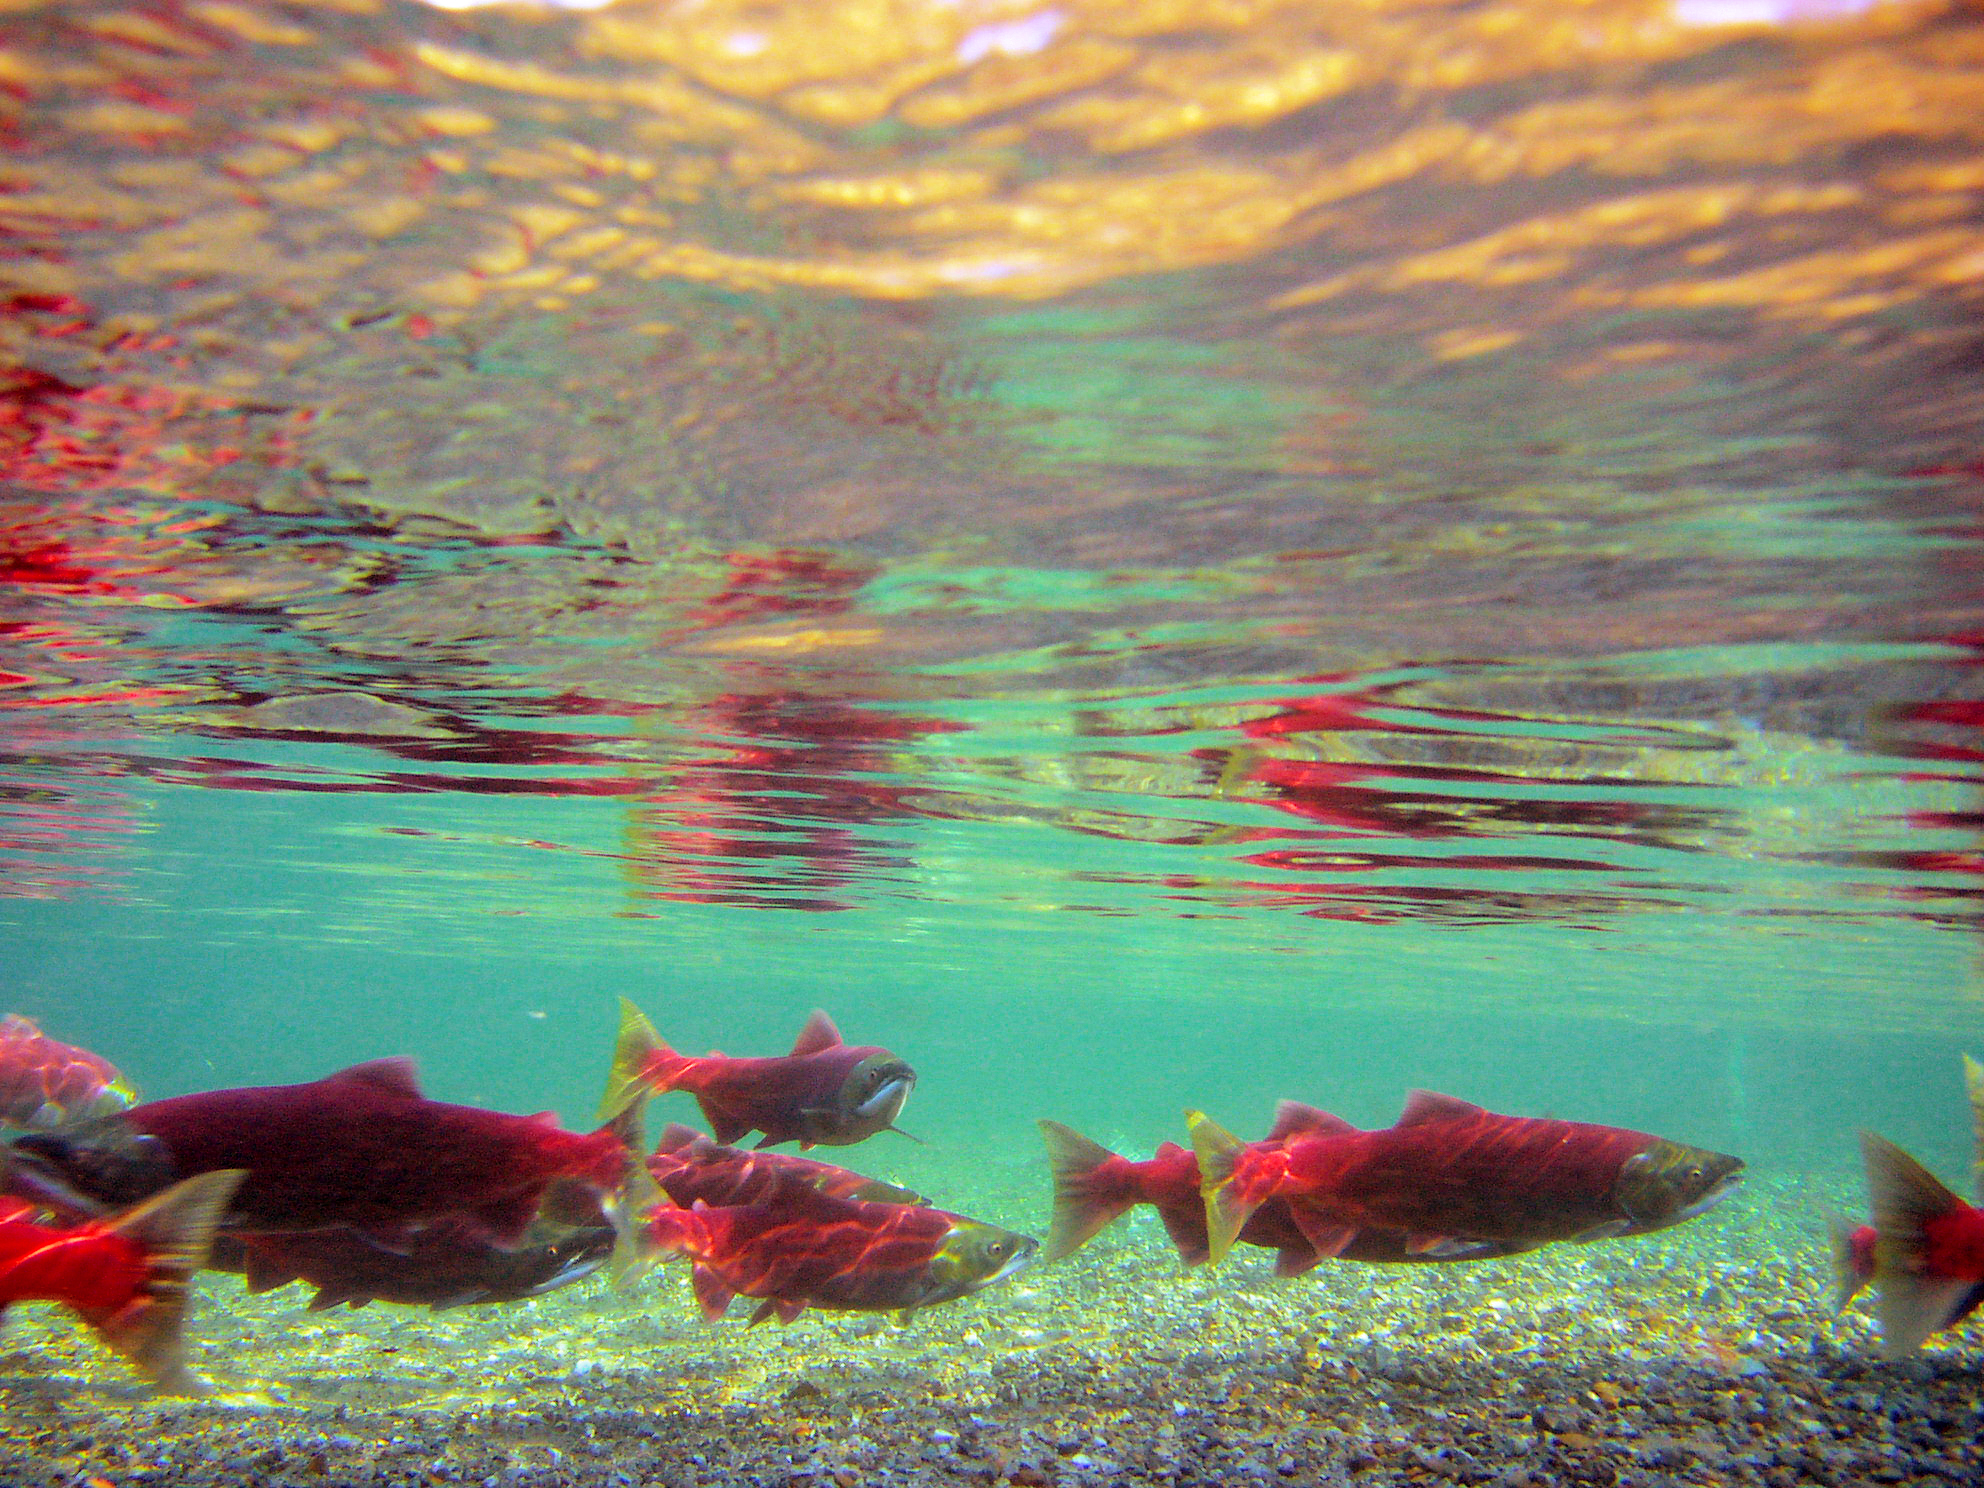 Salmon swimming in water